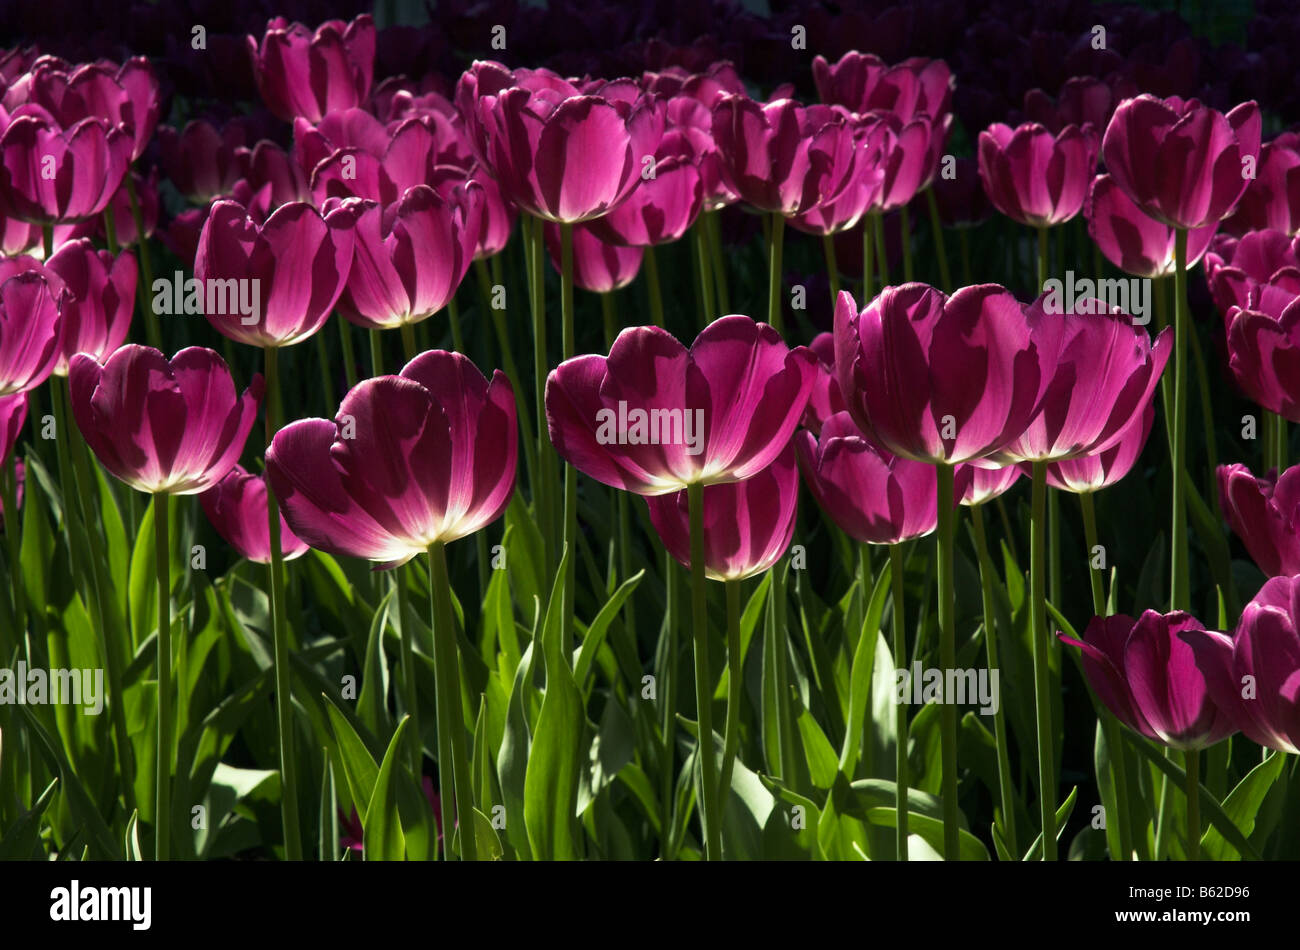 Purple tulips glowing in the sun Stock Photo